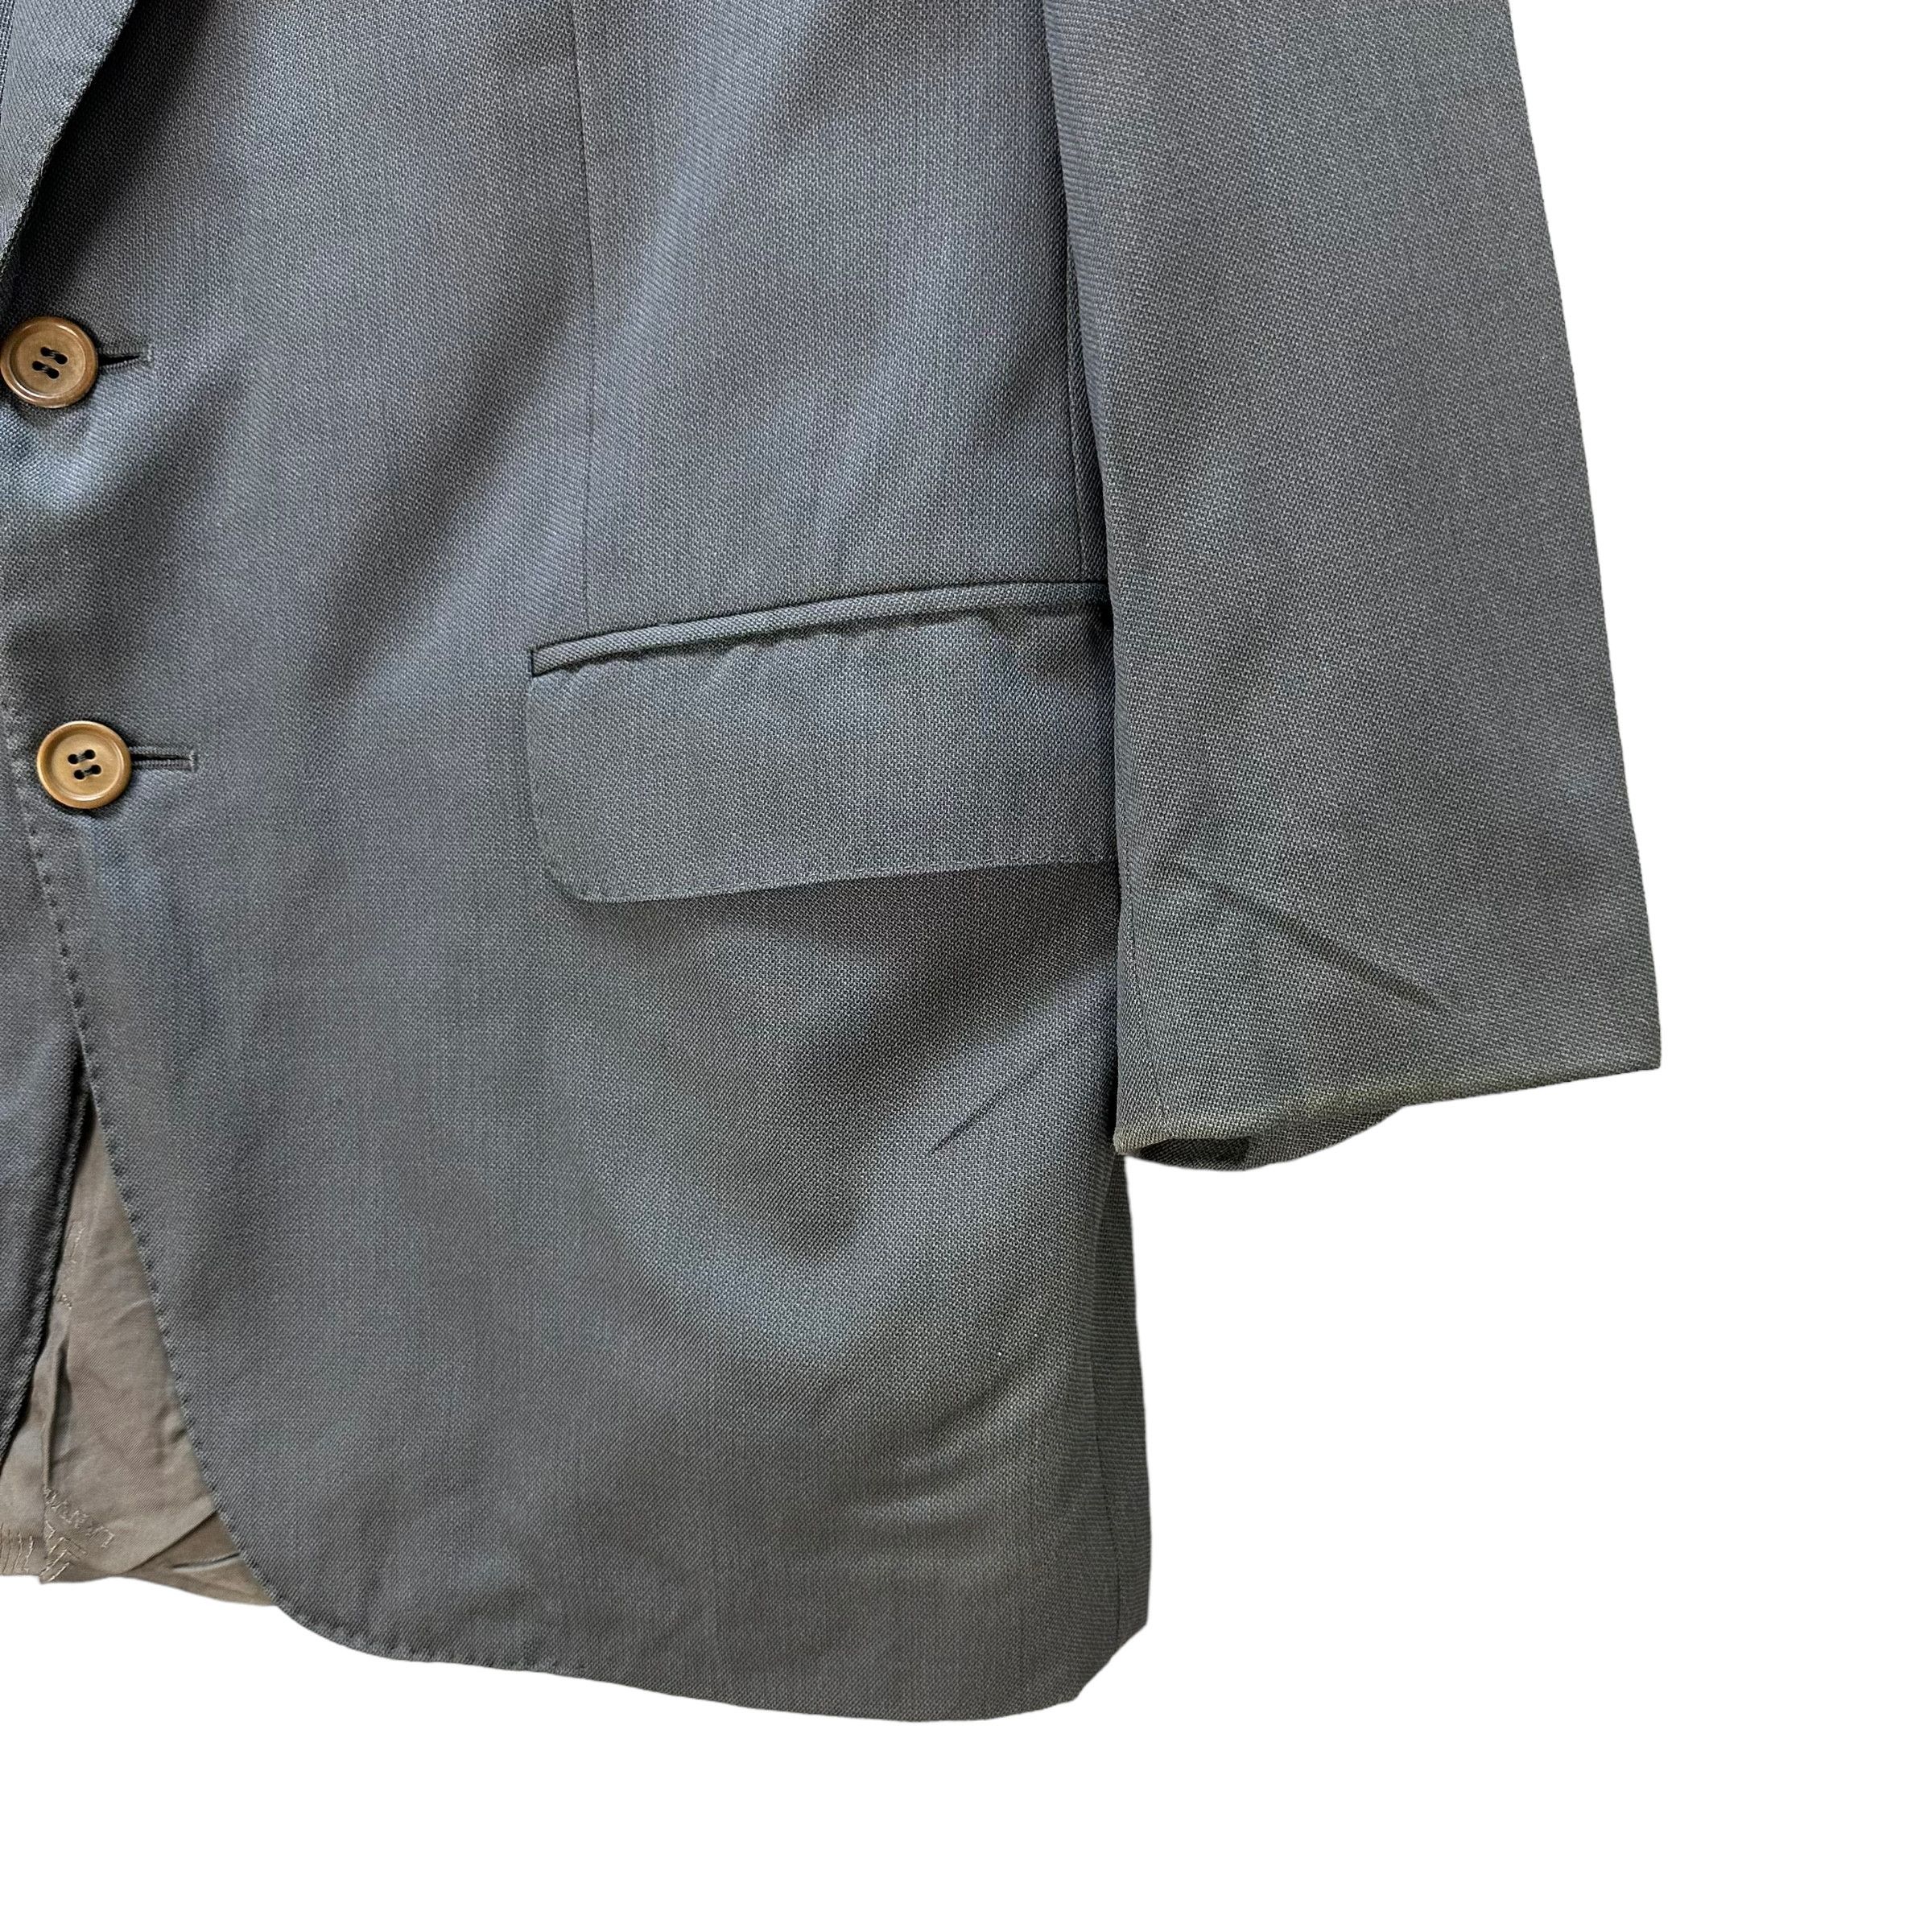 Lanvin Paris Suit Jacket / Blazer #9139-61 - 5